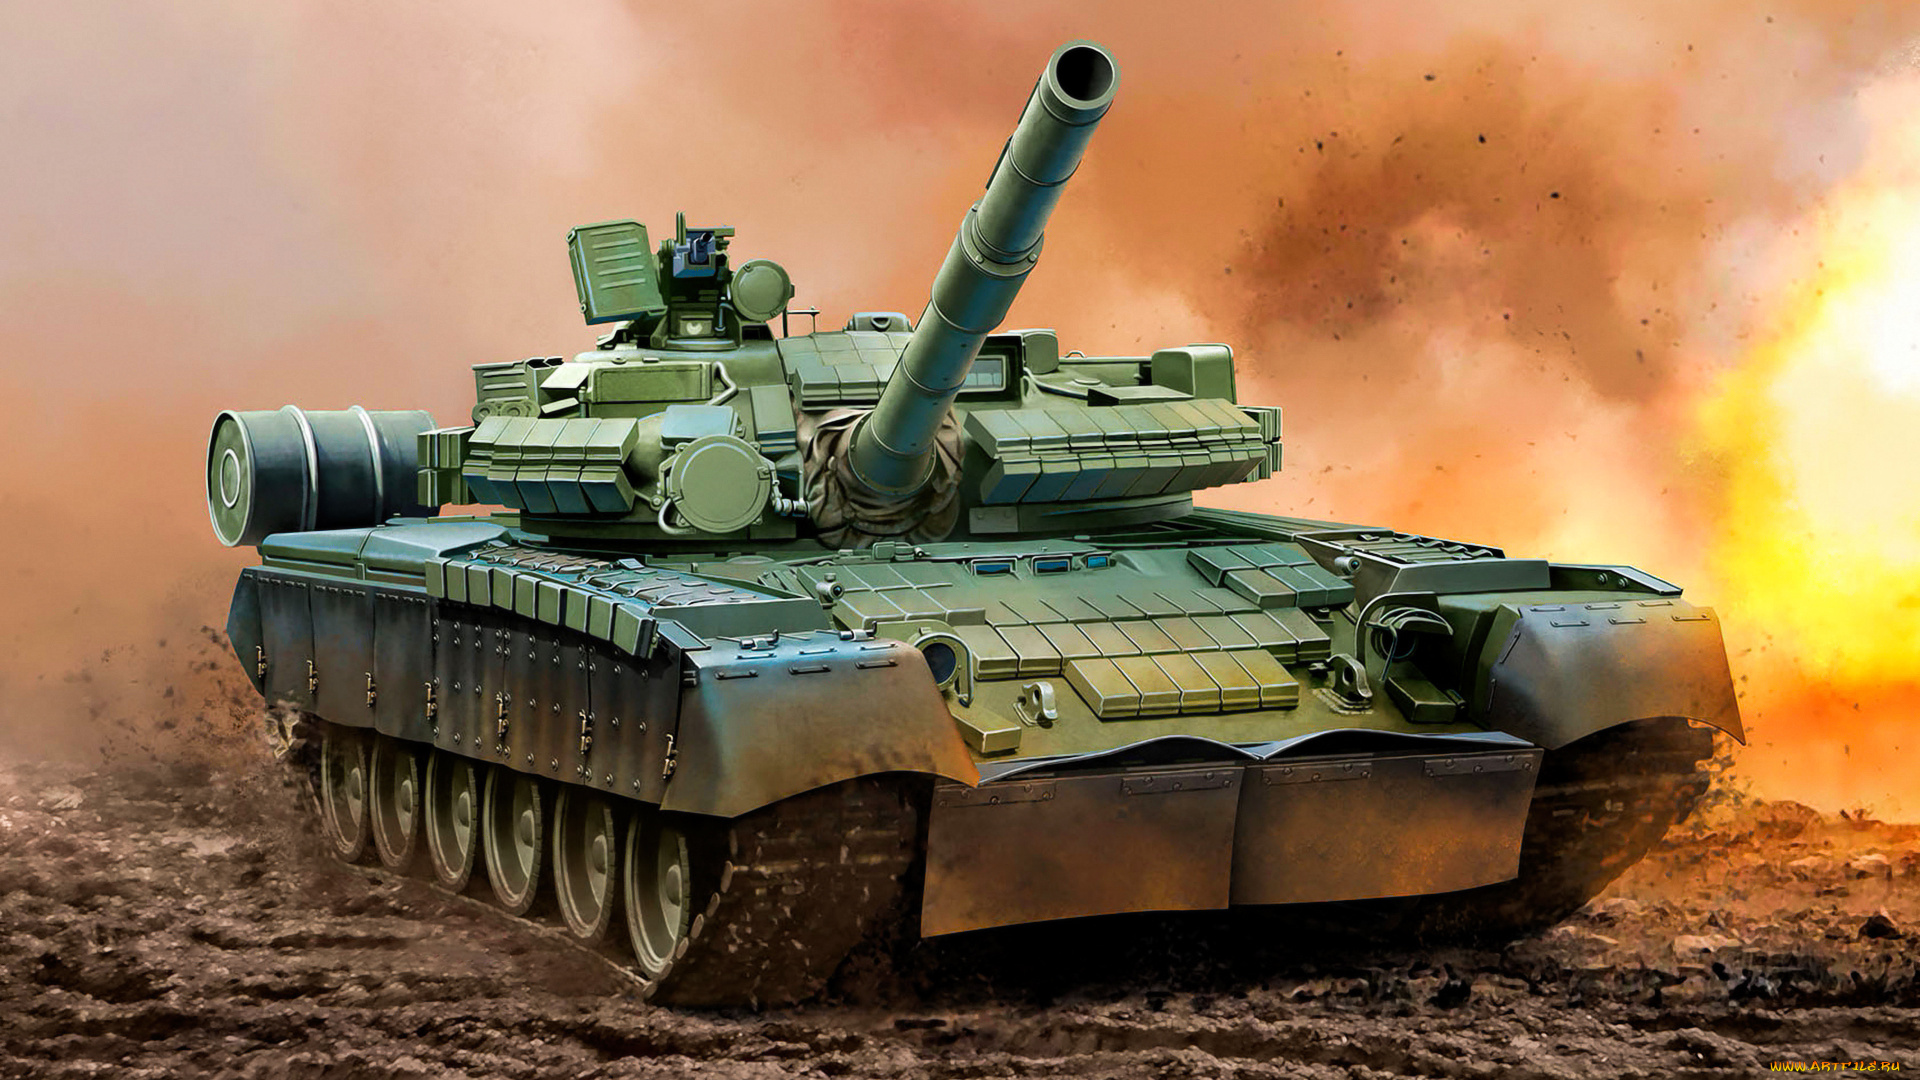 рисованное, армия, tank, t-80, bv, weapon, painting, war, art